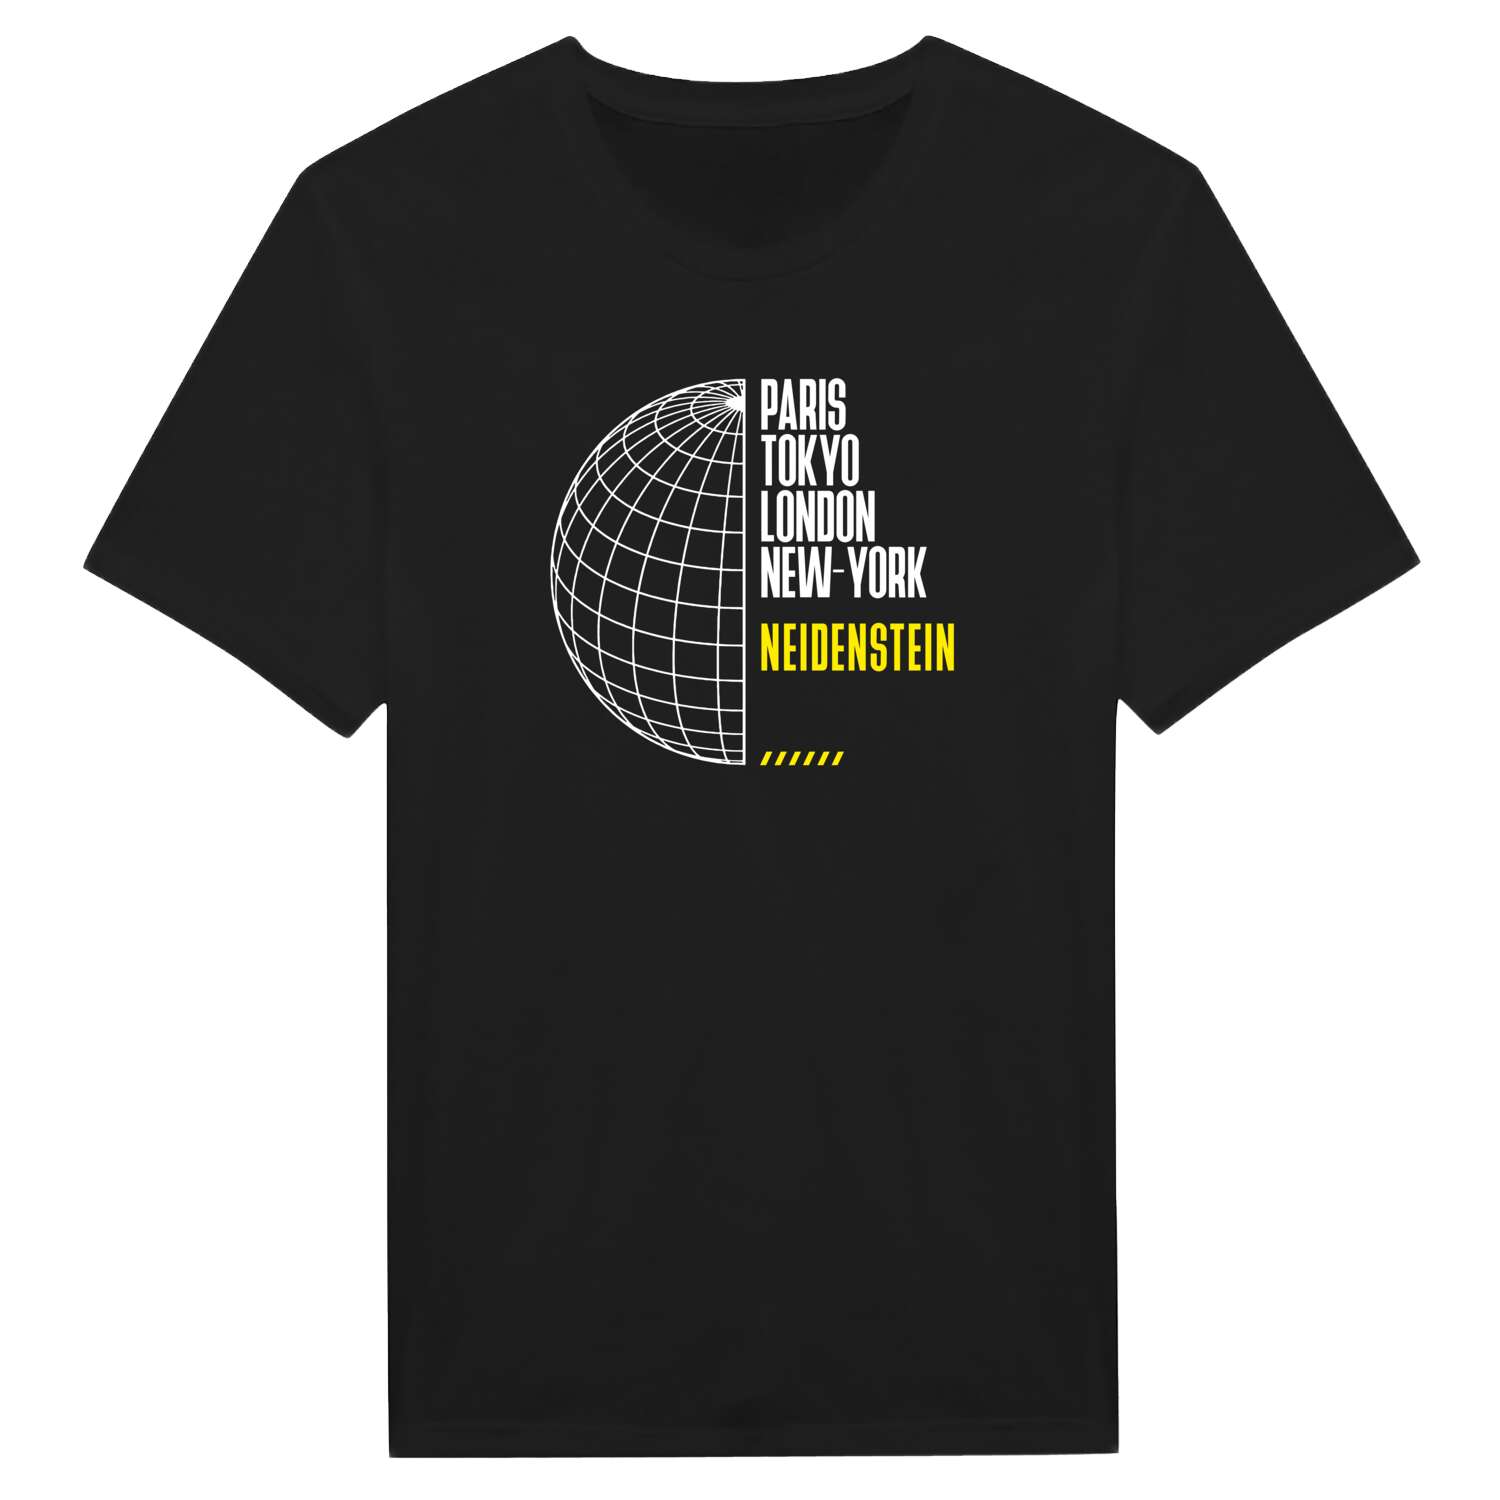 Neidenstein T-Shirt »Paris Tokyo London«